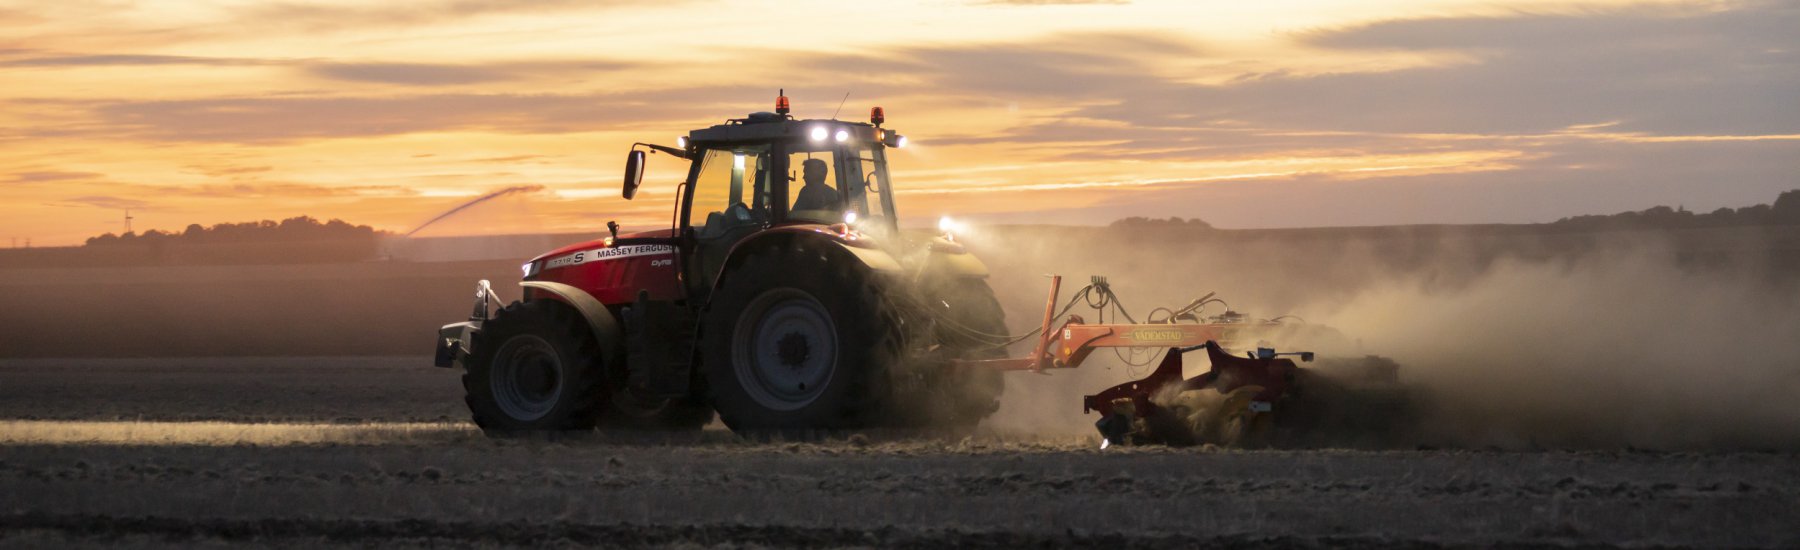 Team Agri Techniek Slingeland staat volledig achter de boeren tijdens het Landelijke Boerenprotest!